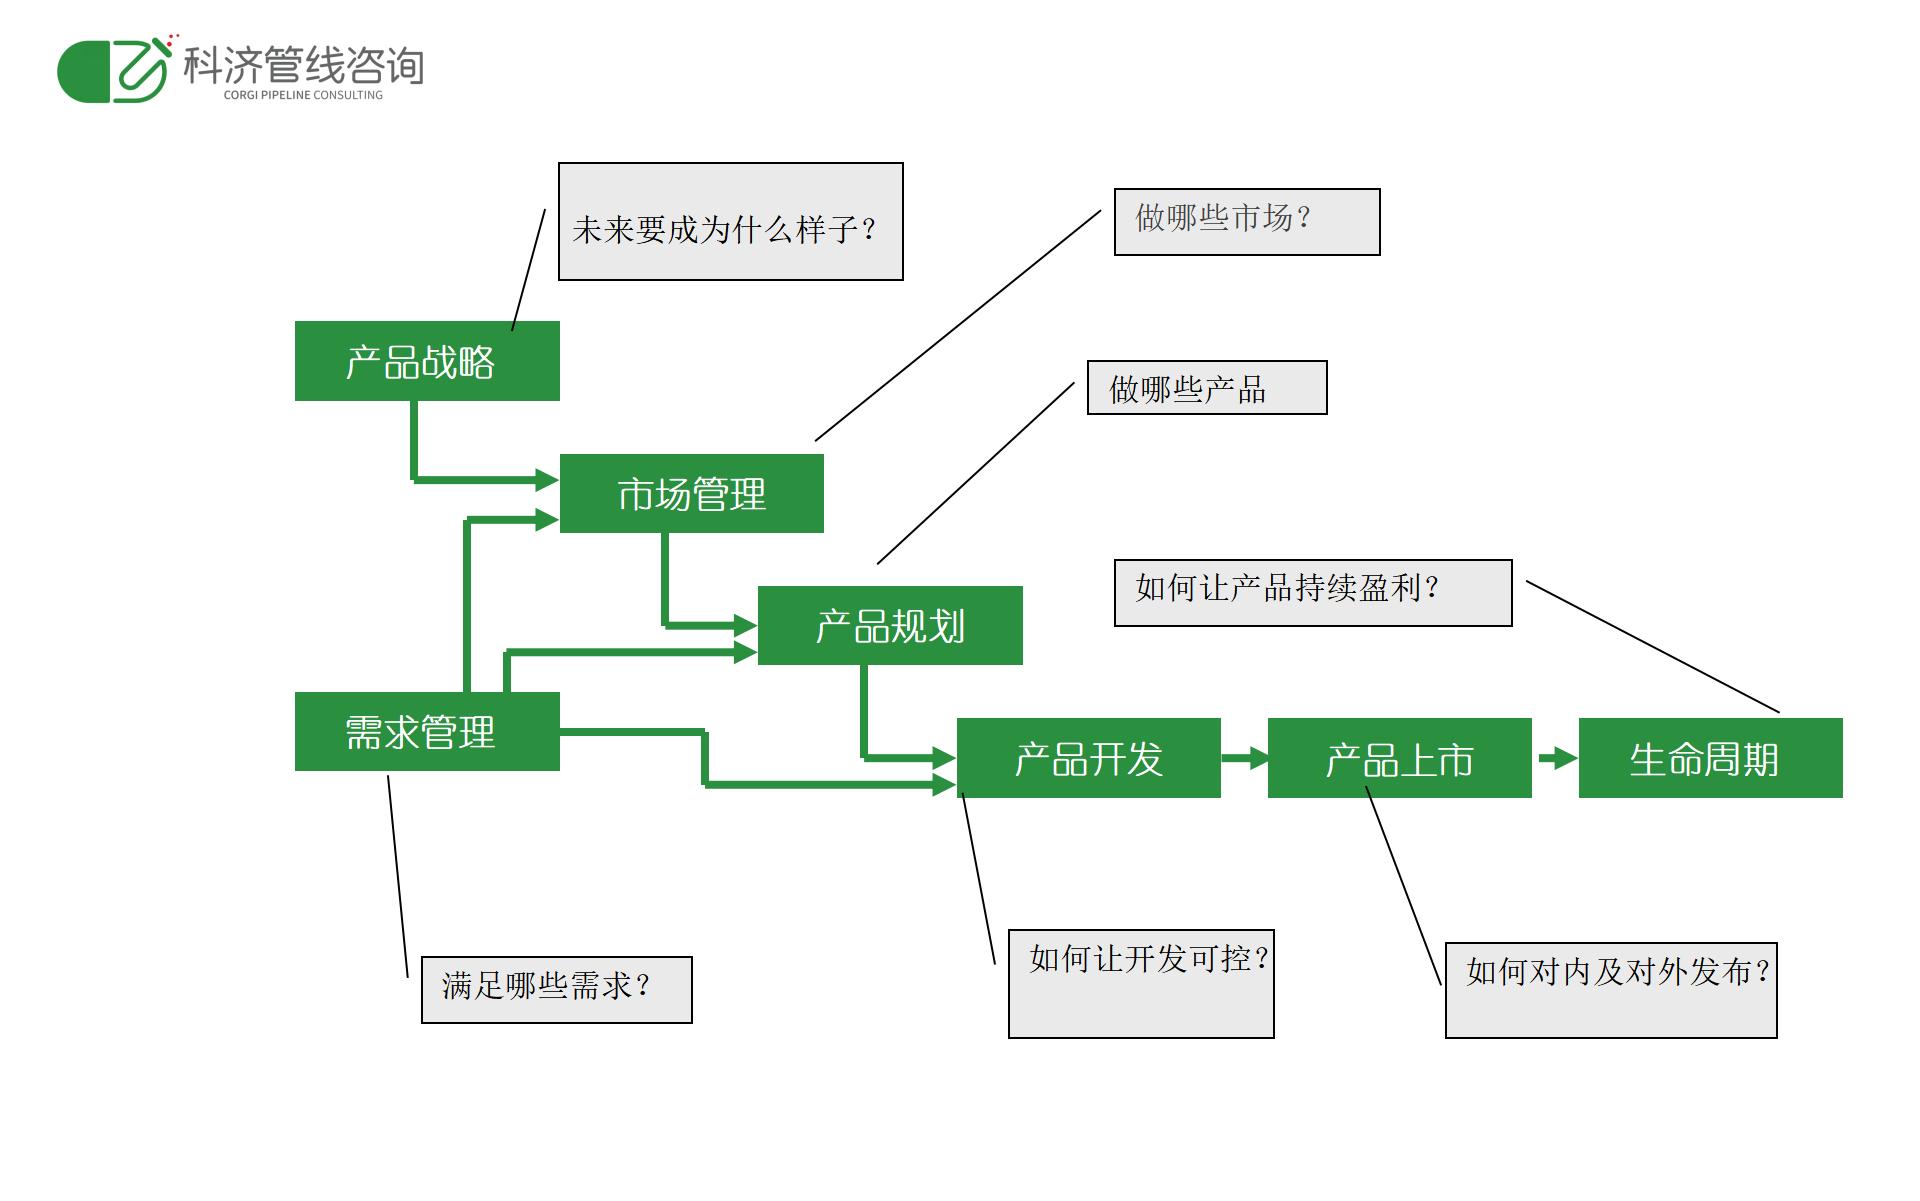 某大型医疗器械集团WPLM集成产品管理体系案例(图8)